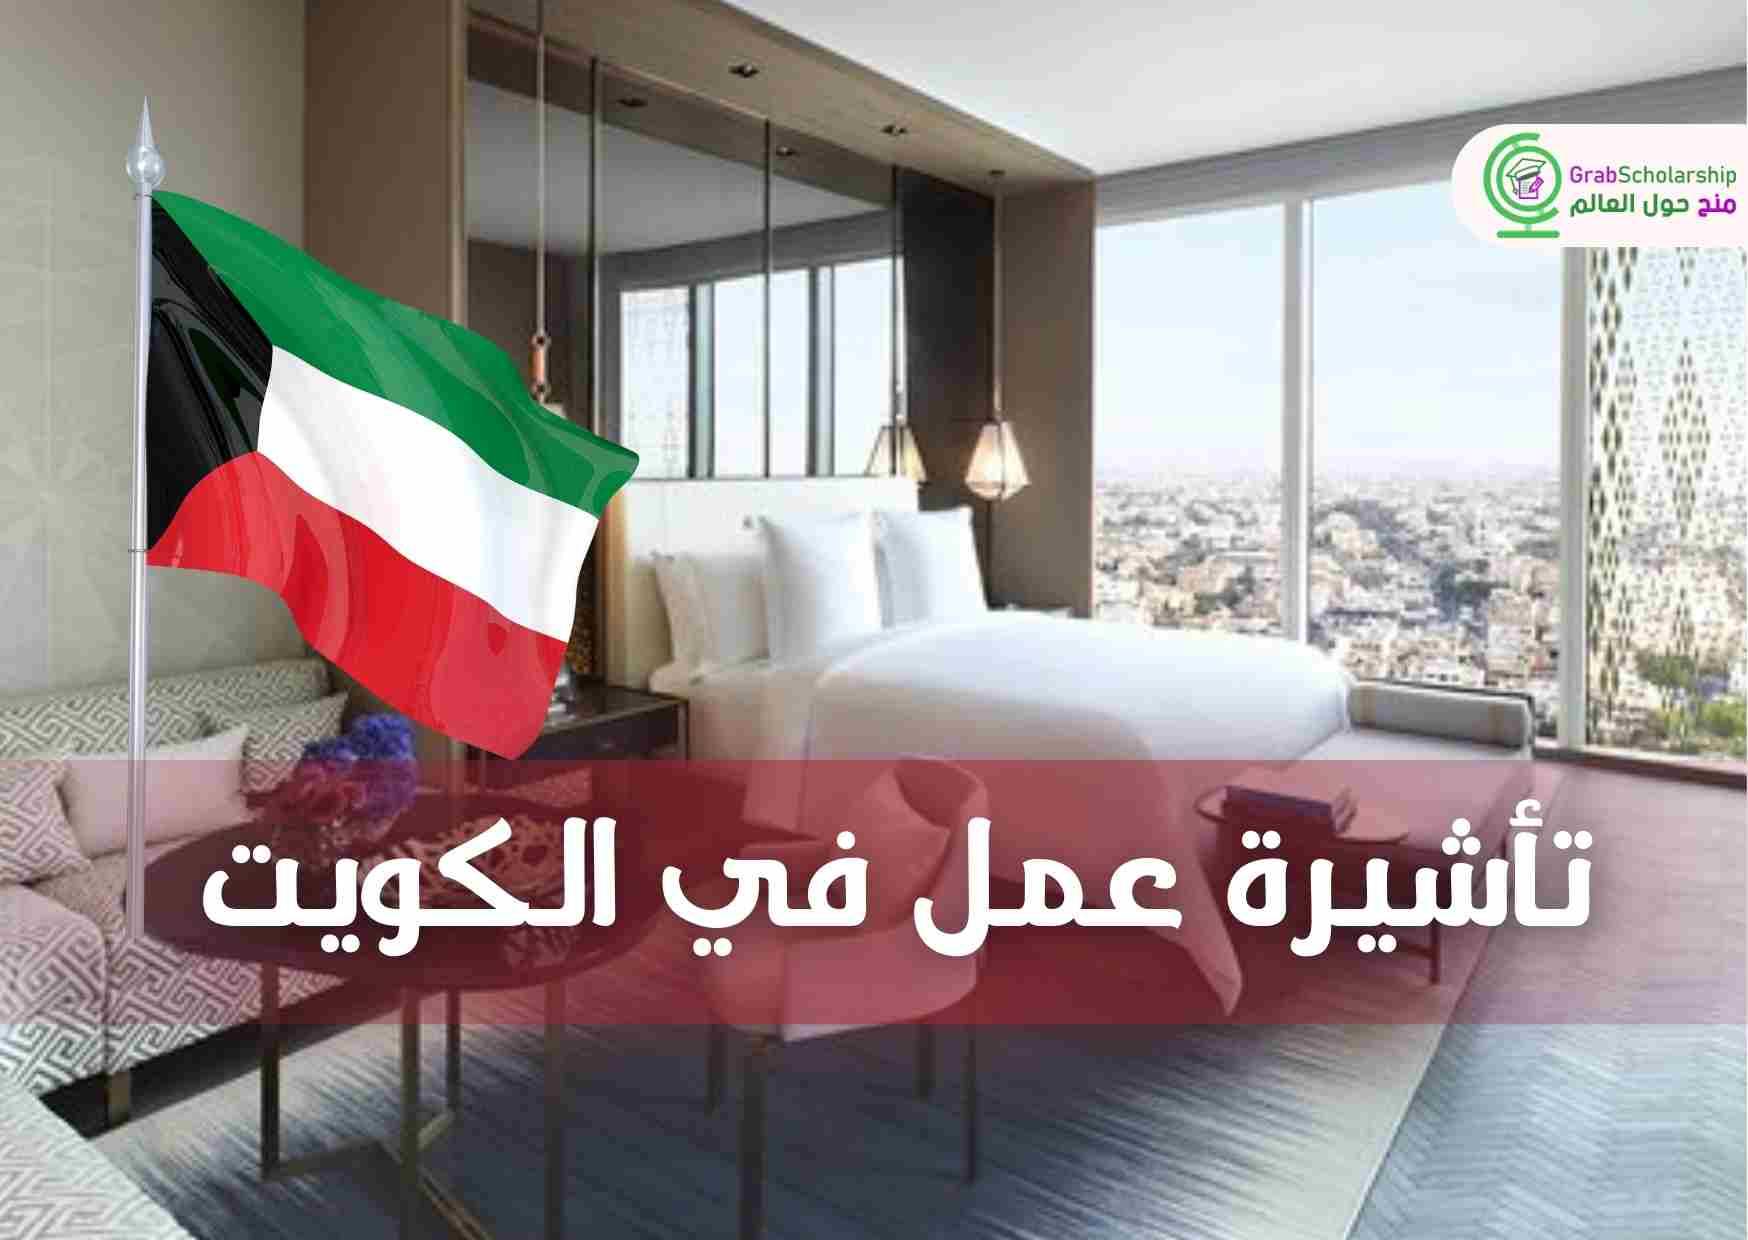 تأشيرة عمل في الكويت من خلال وظائف في فندق عالمي